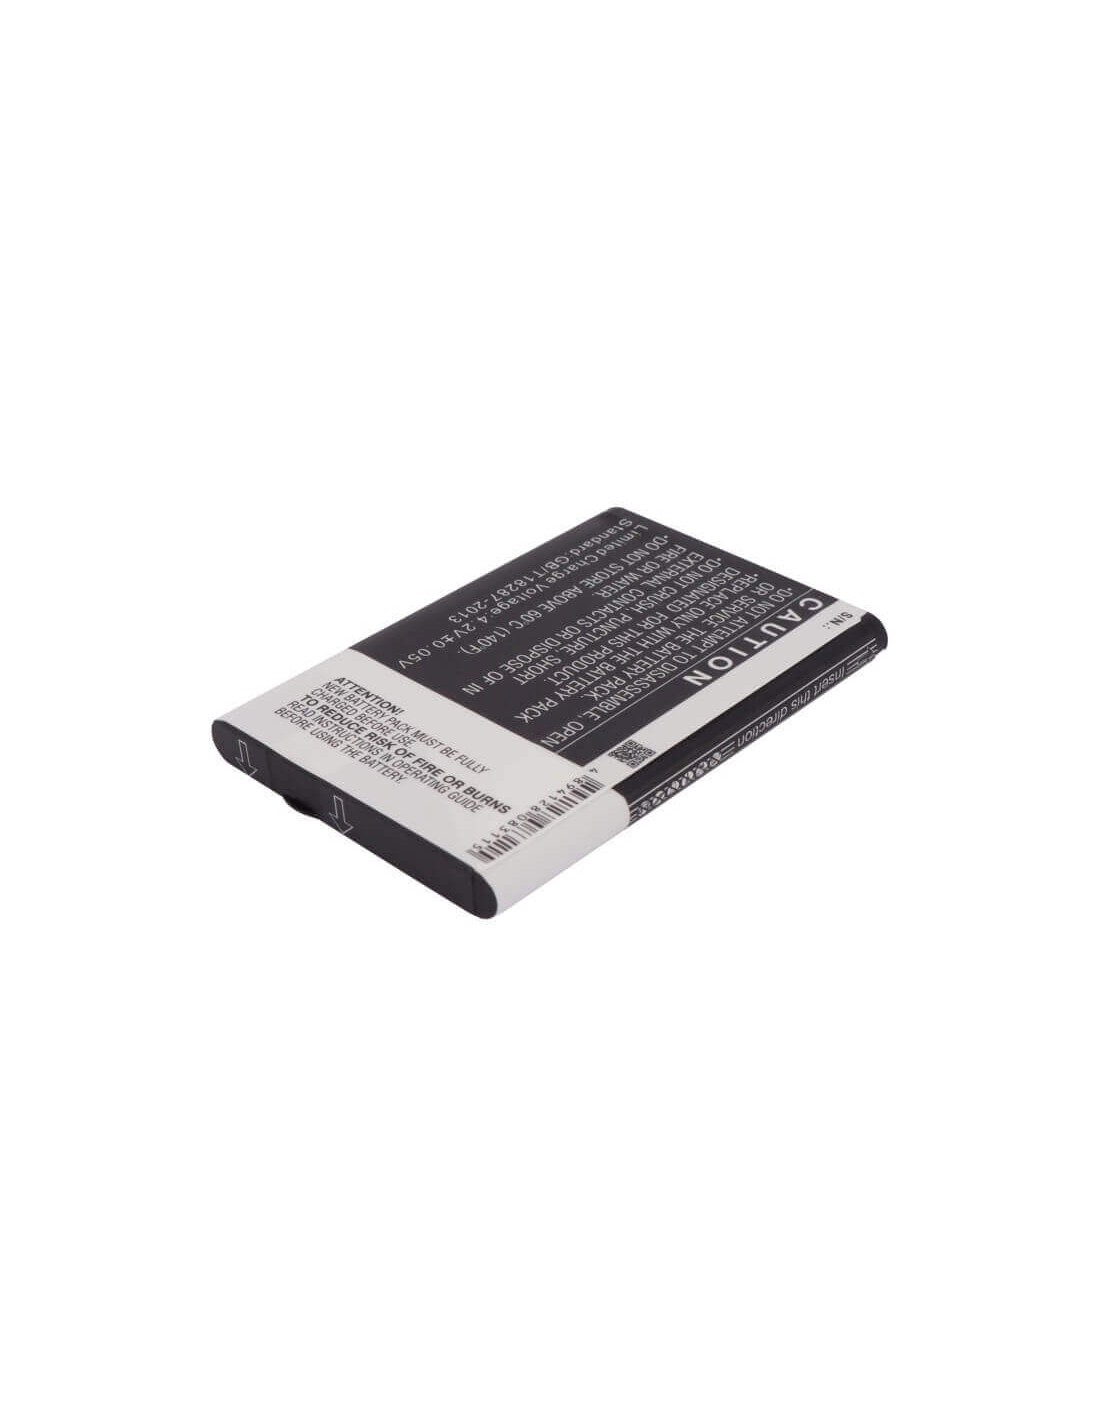 Battery for Novatel Wireless Mifi 5510, Mifi 5510l, Mifi5510 3.7V, 1800mAh - 6.66Wh